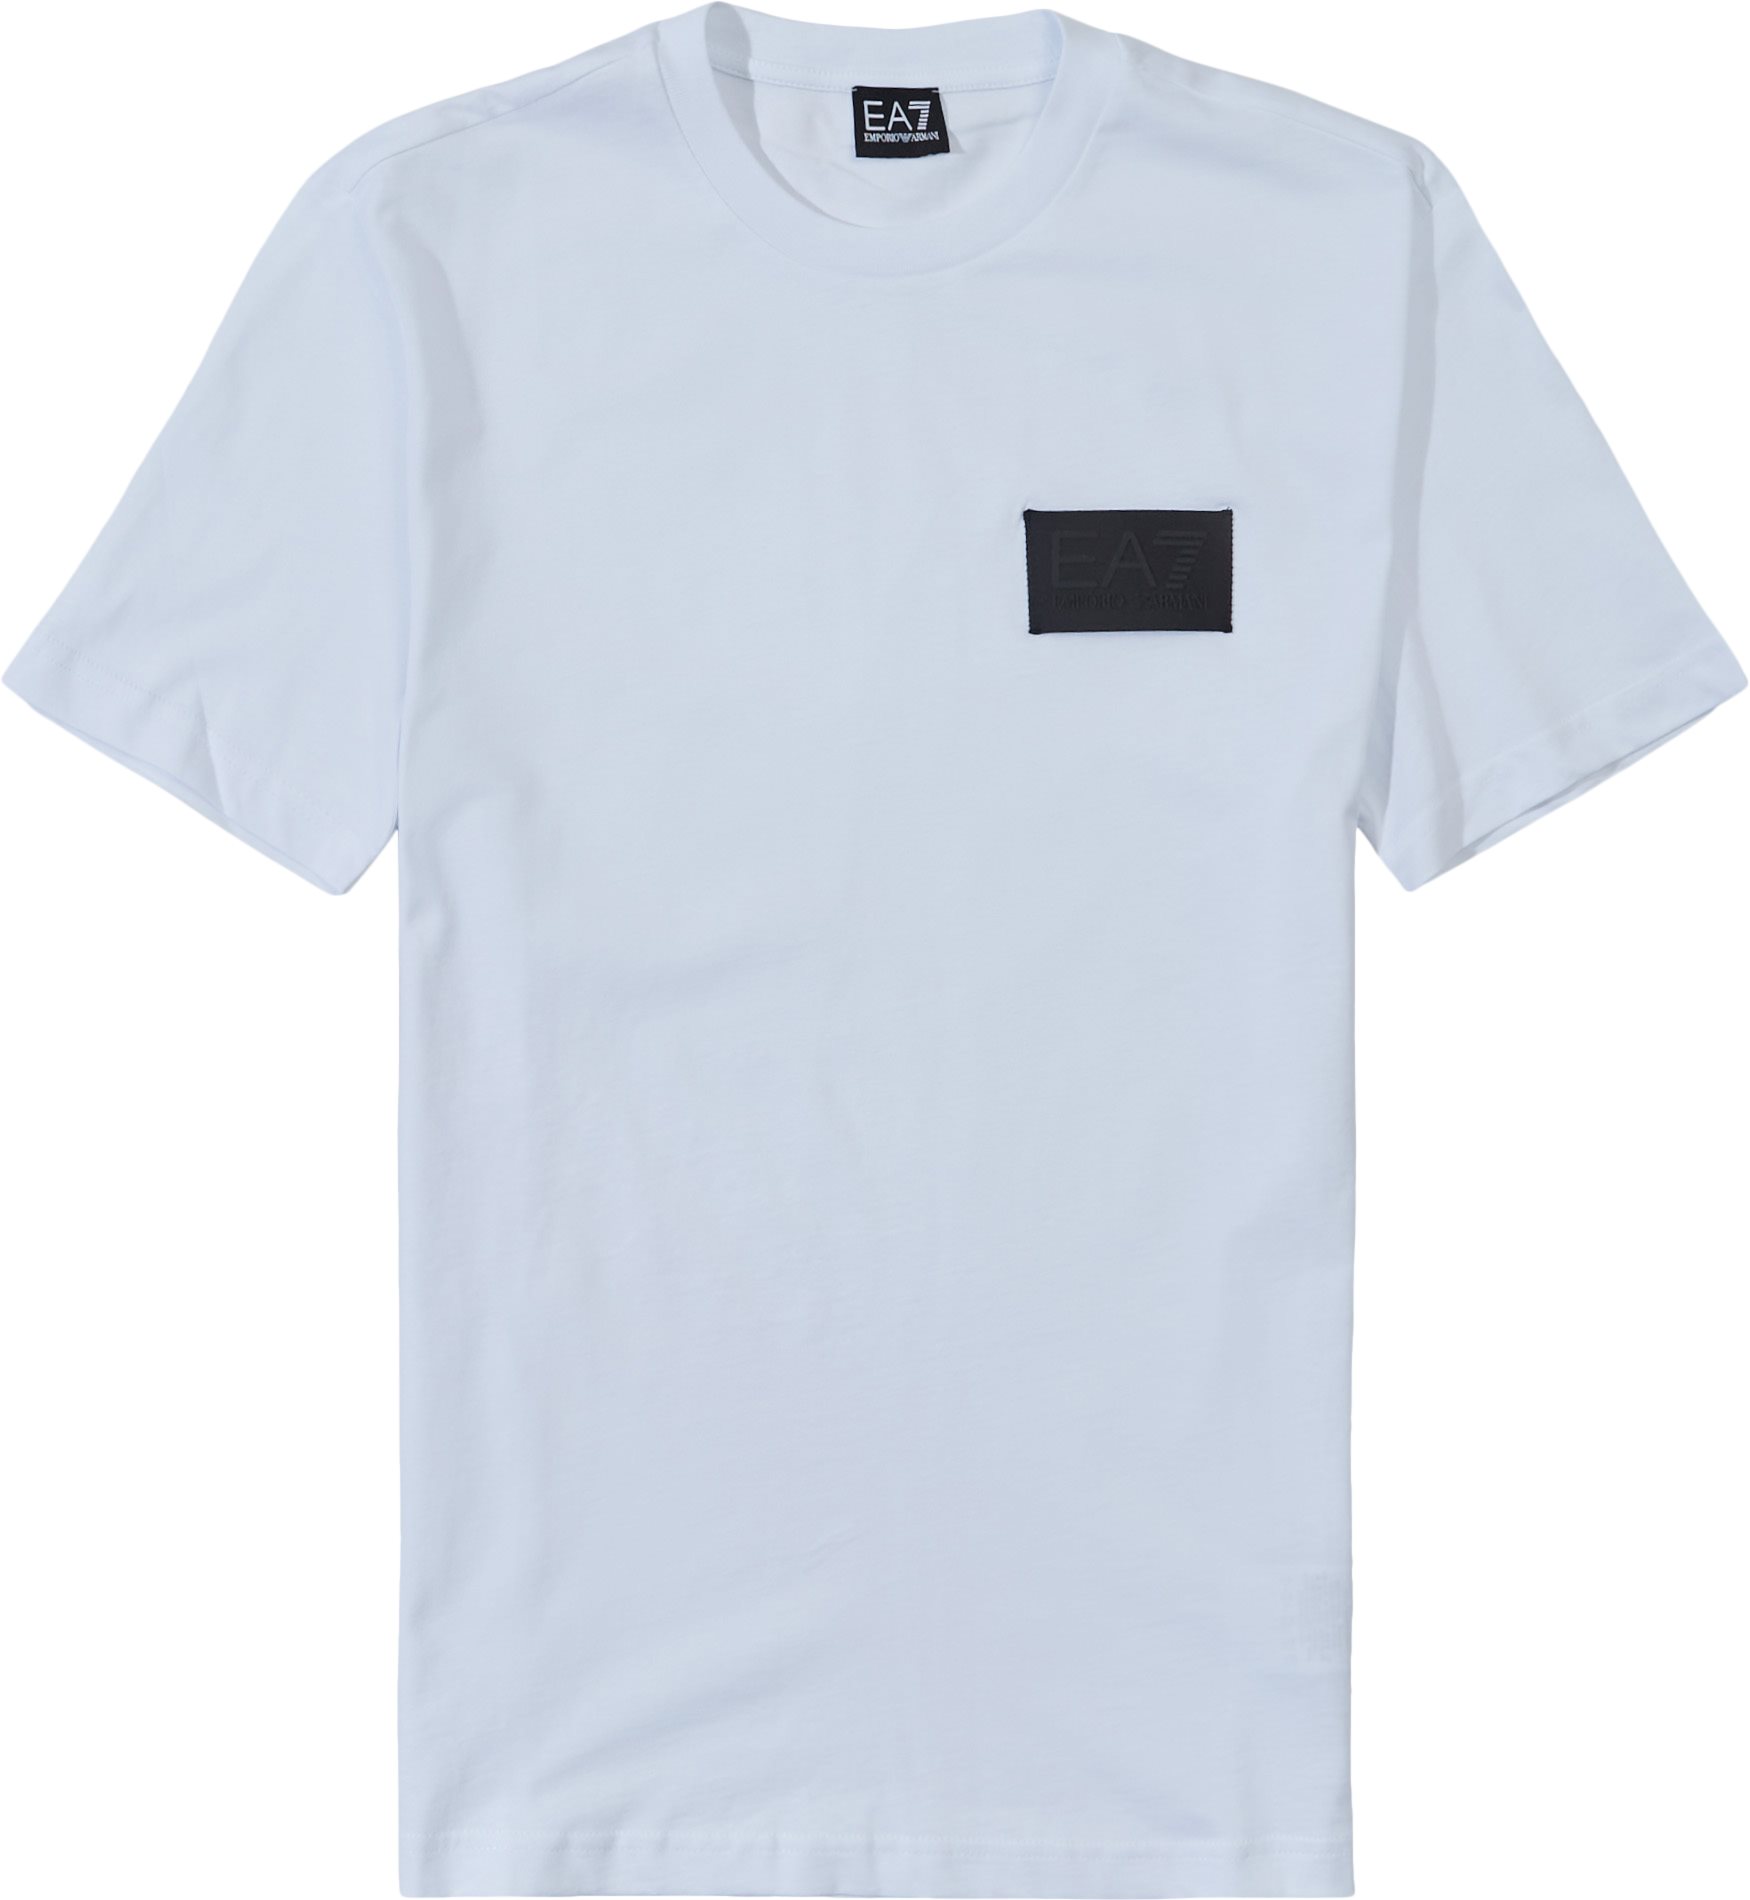 Pjbyz-6lpt04 - T-shirts - Regular fit - White